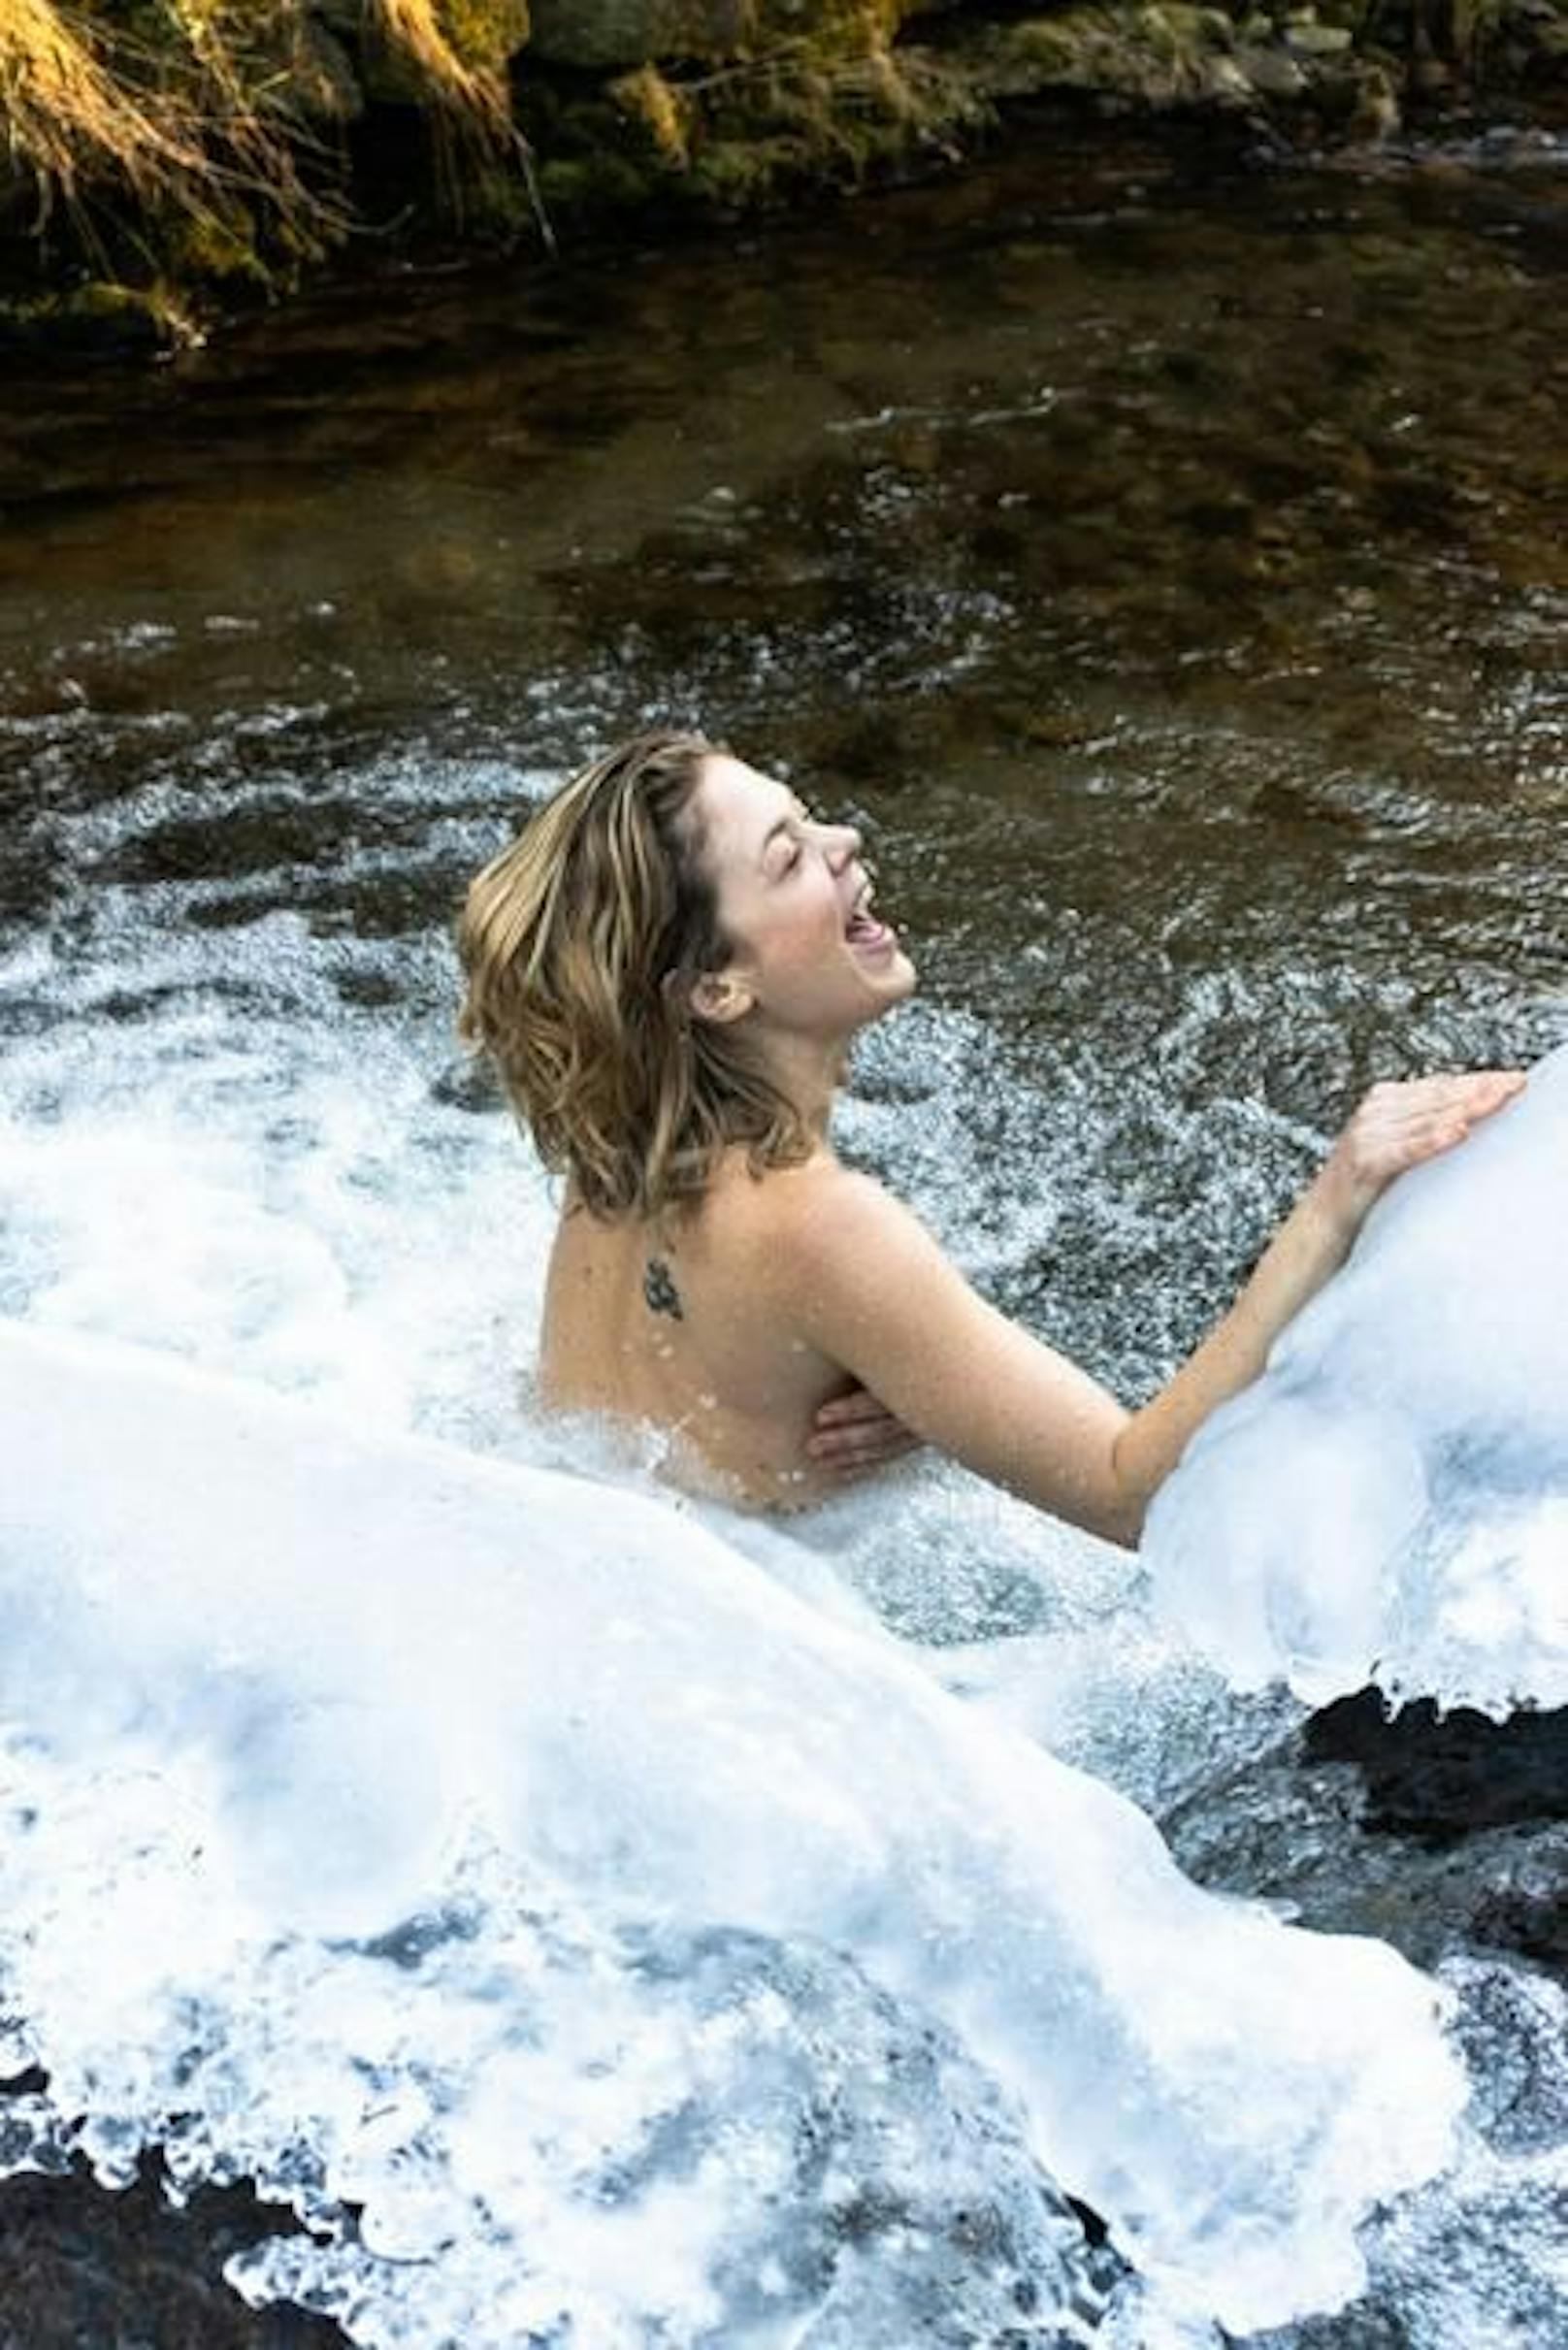 Sigrid Spörk geht für ein Fotoshooting Eisbaden – und das oben ohne.